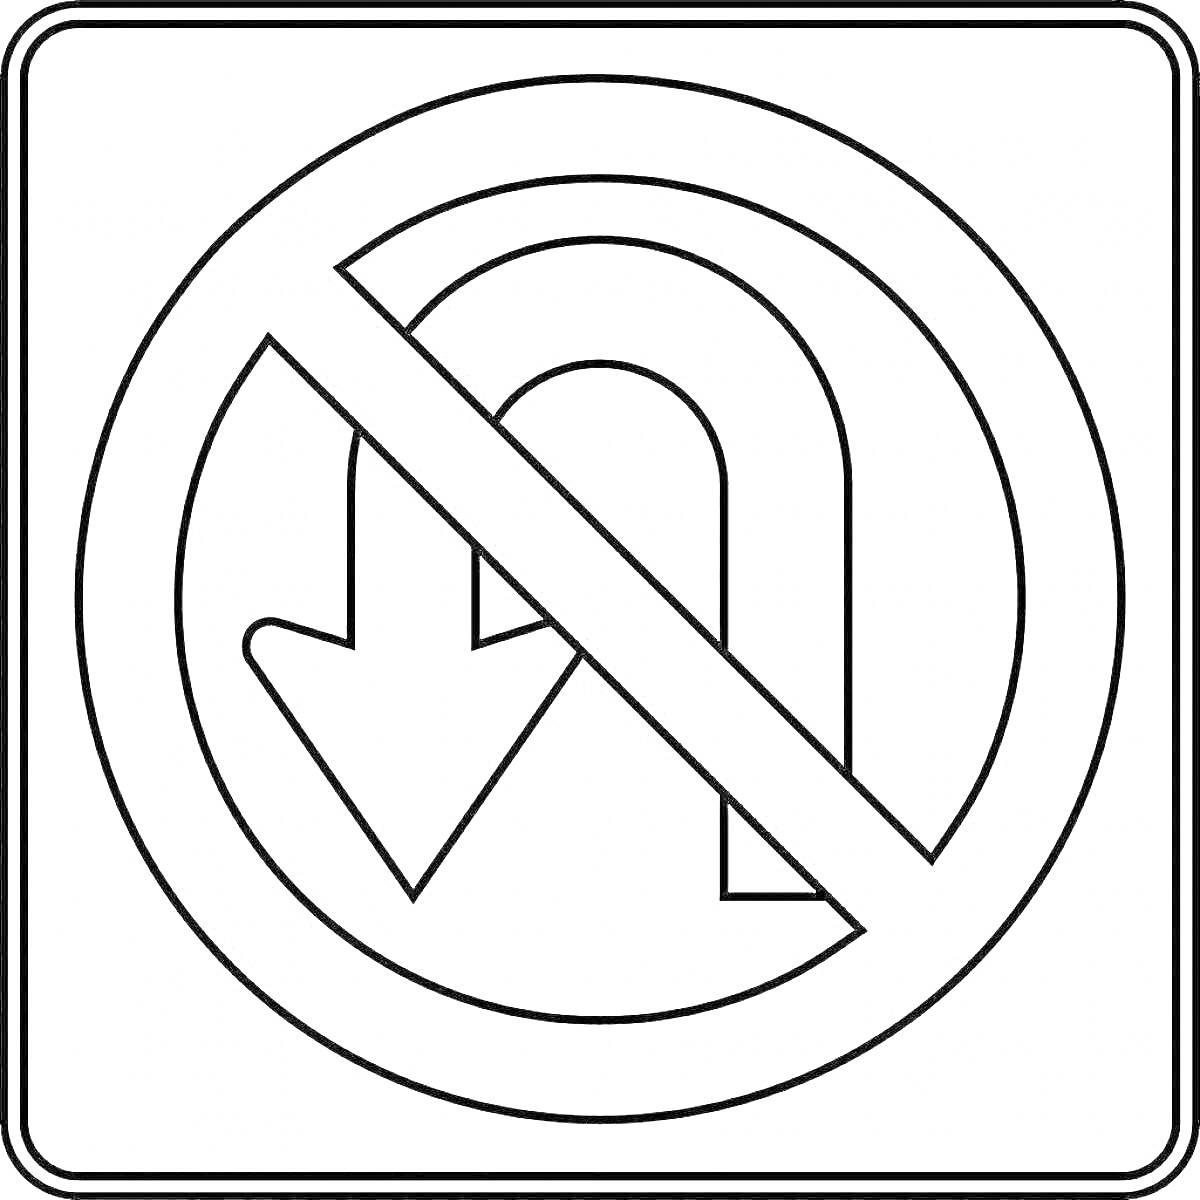 Раскраска запрещающий знак «разворот запрещен» с перечеркнутой стрелкой, направленной вниз и затем обратно вверх